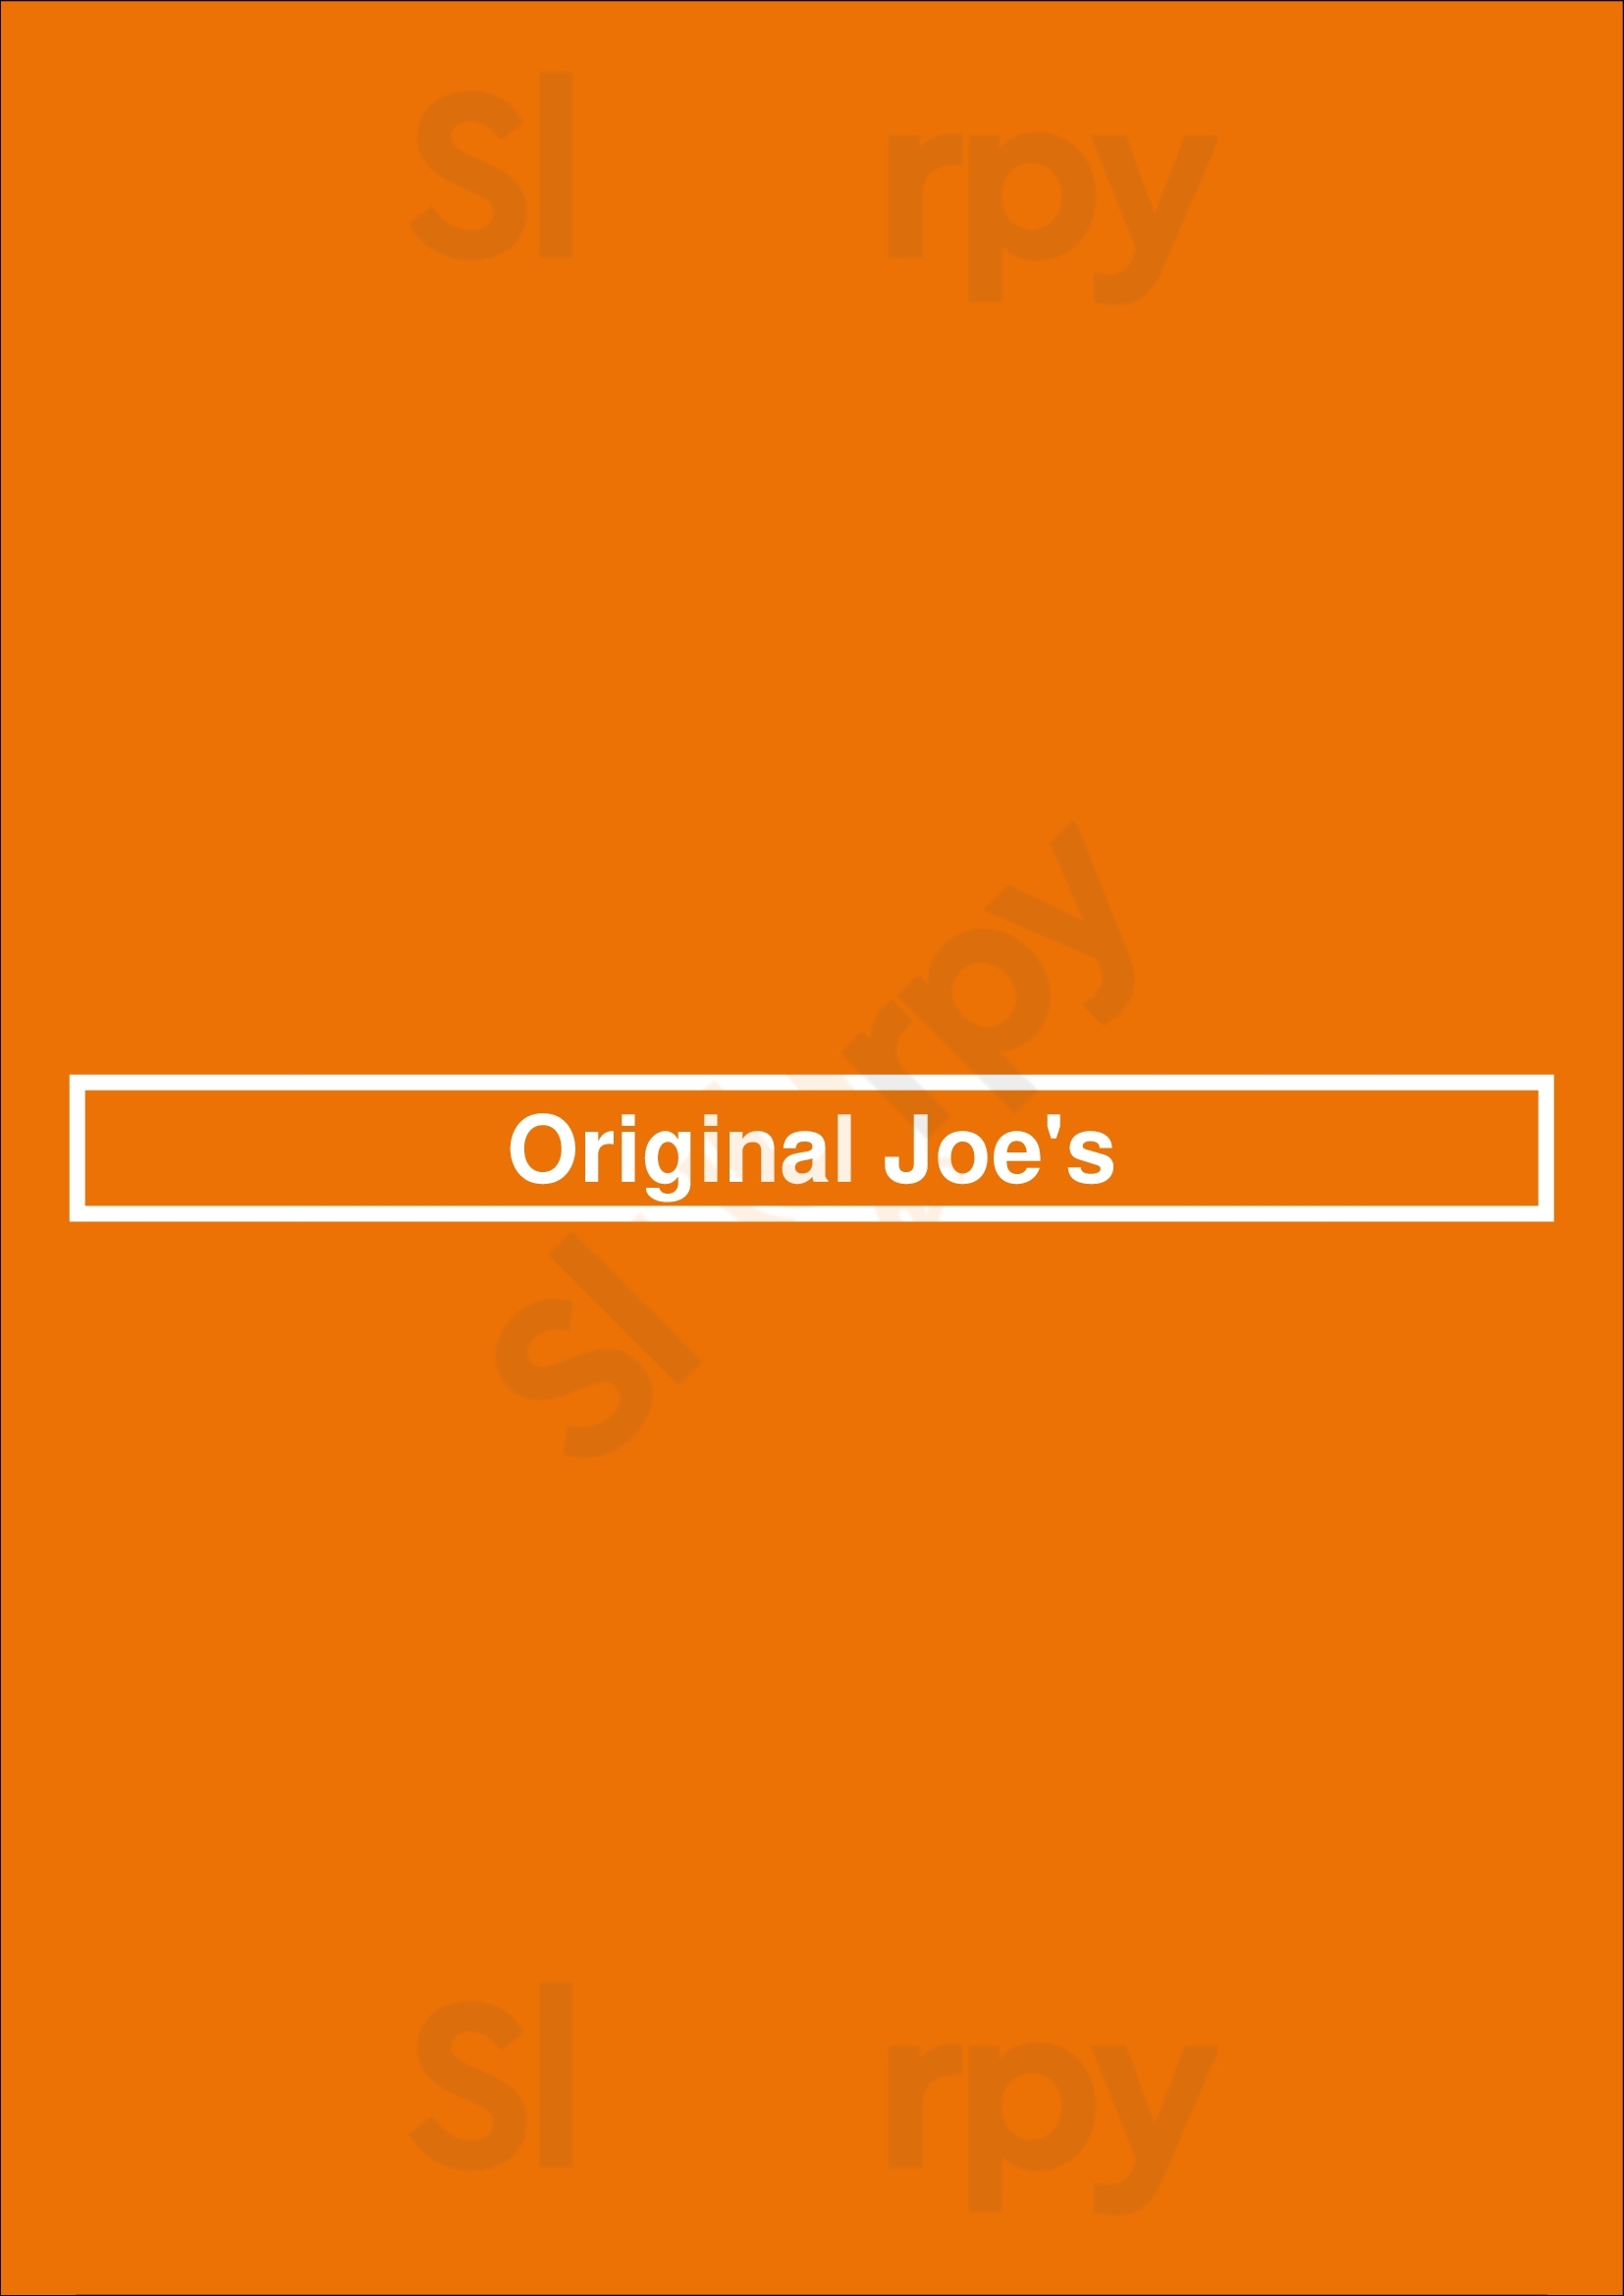 Original Joe's Winnipeg Menu - 1